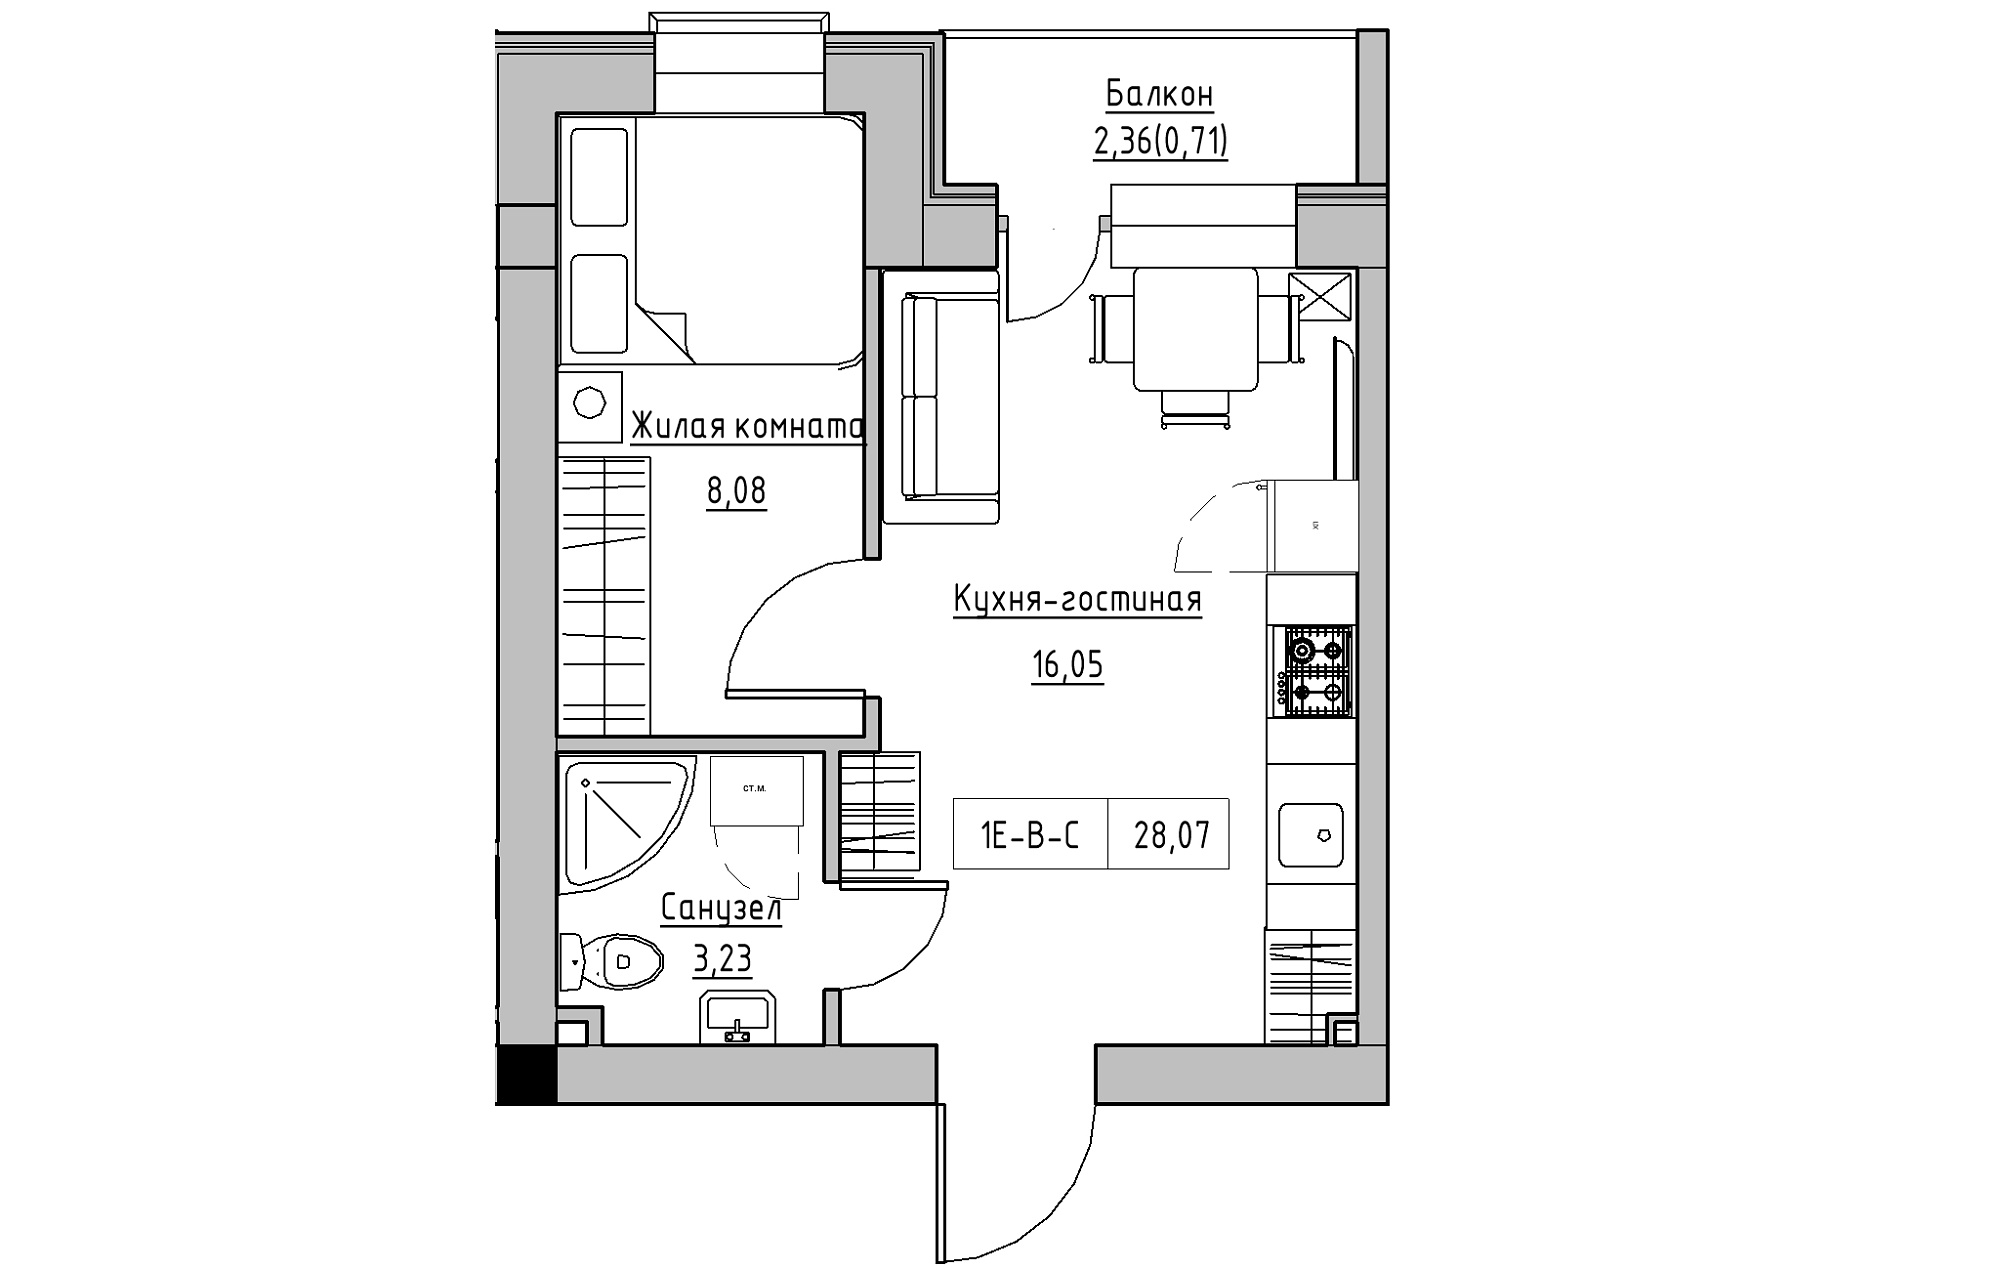 Планировка 1-к квартира площей 28.07м2, KS-018-05/0007.